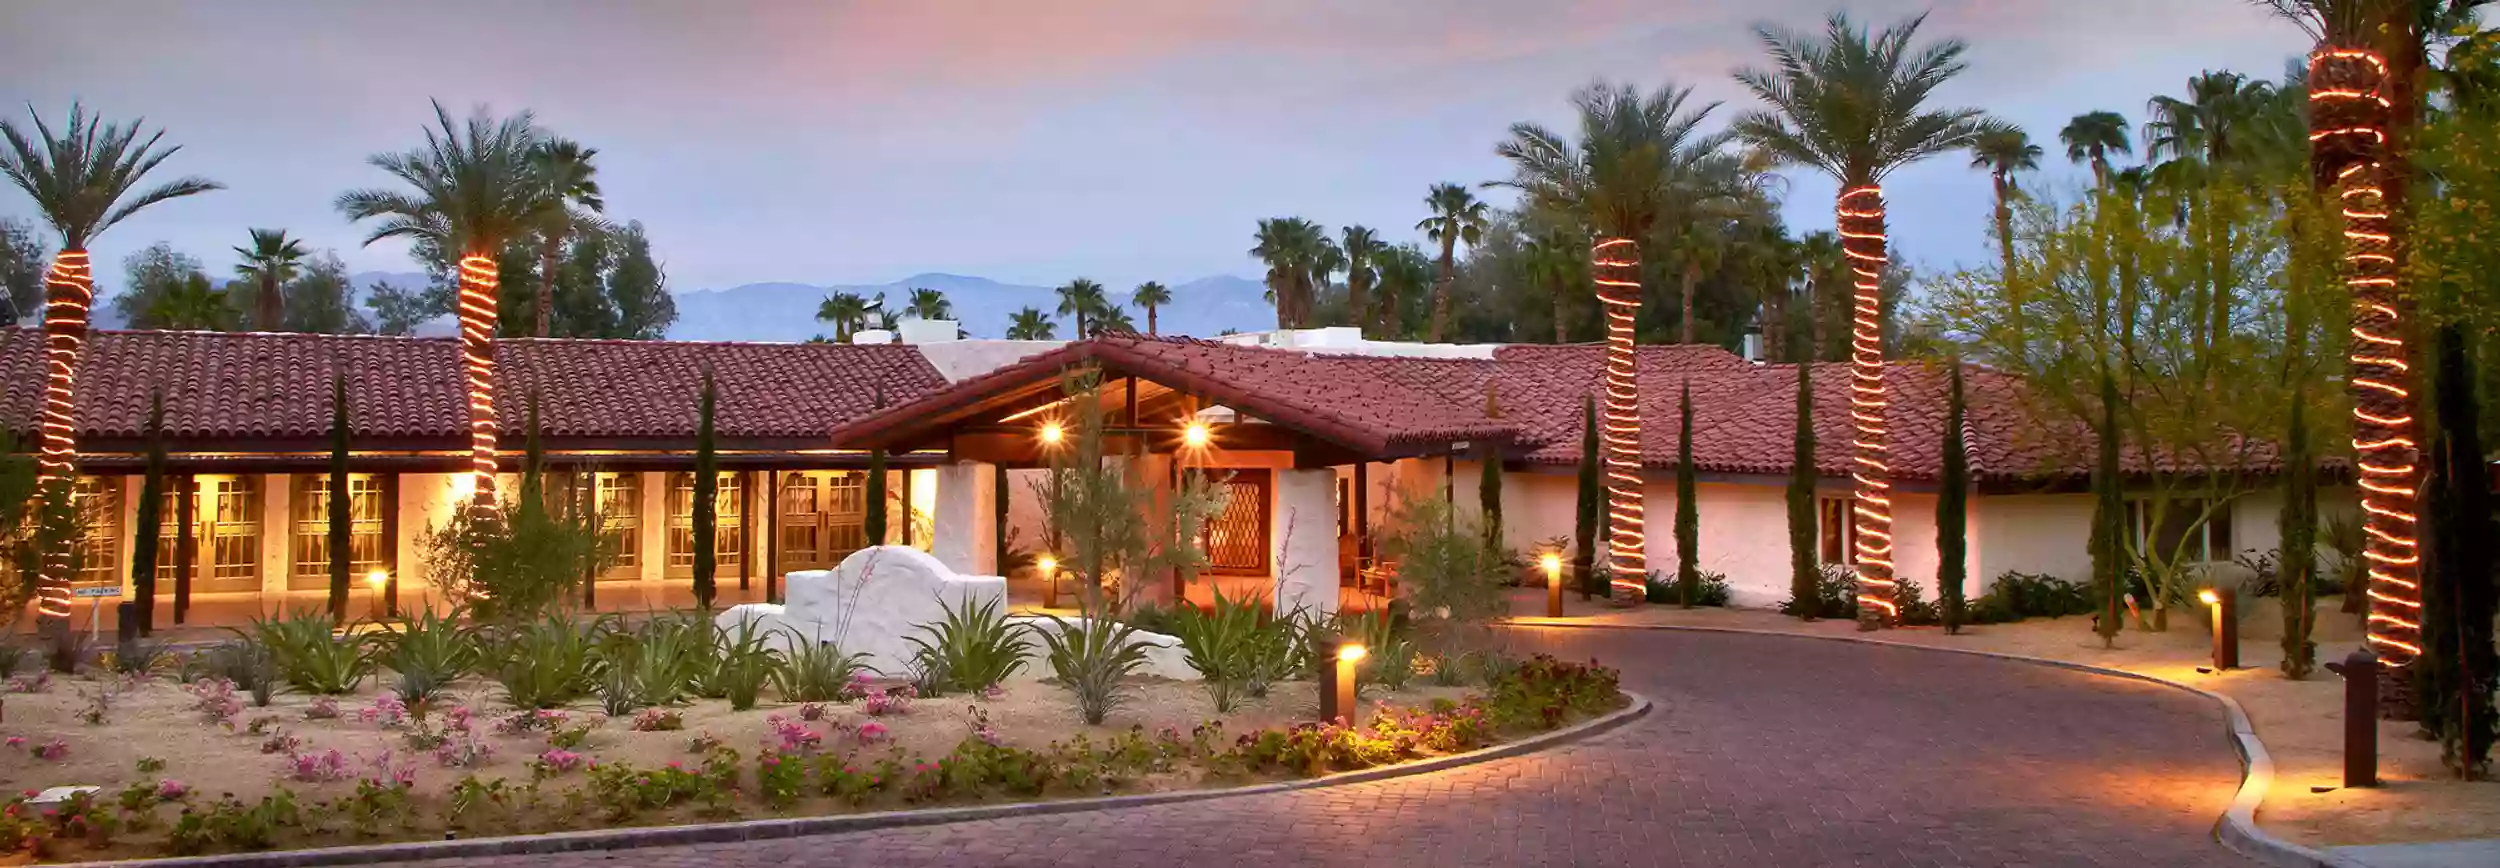 La Casa Del Zorro Desert Resort & Spa